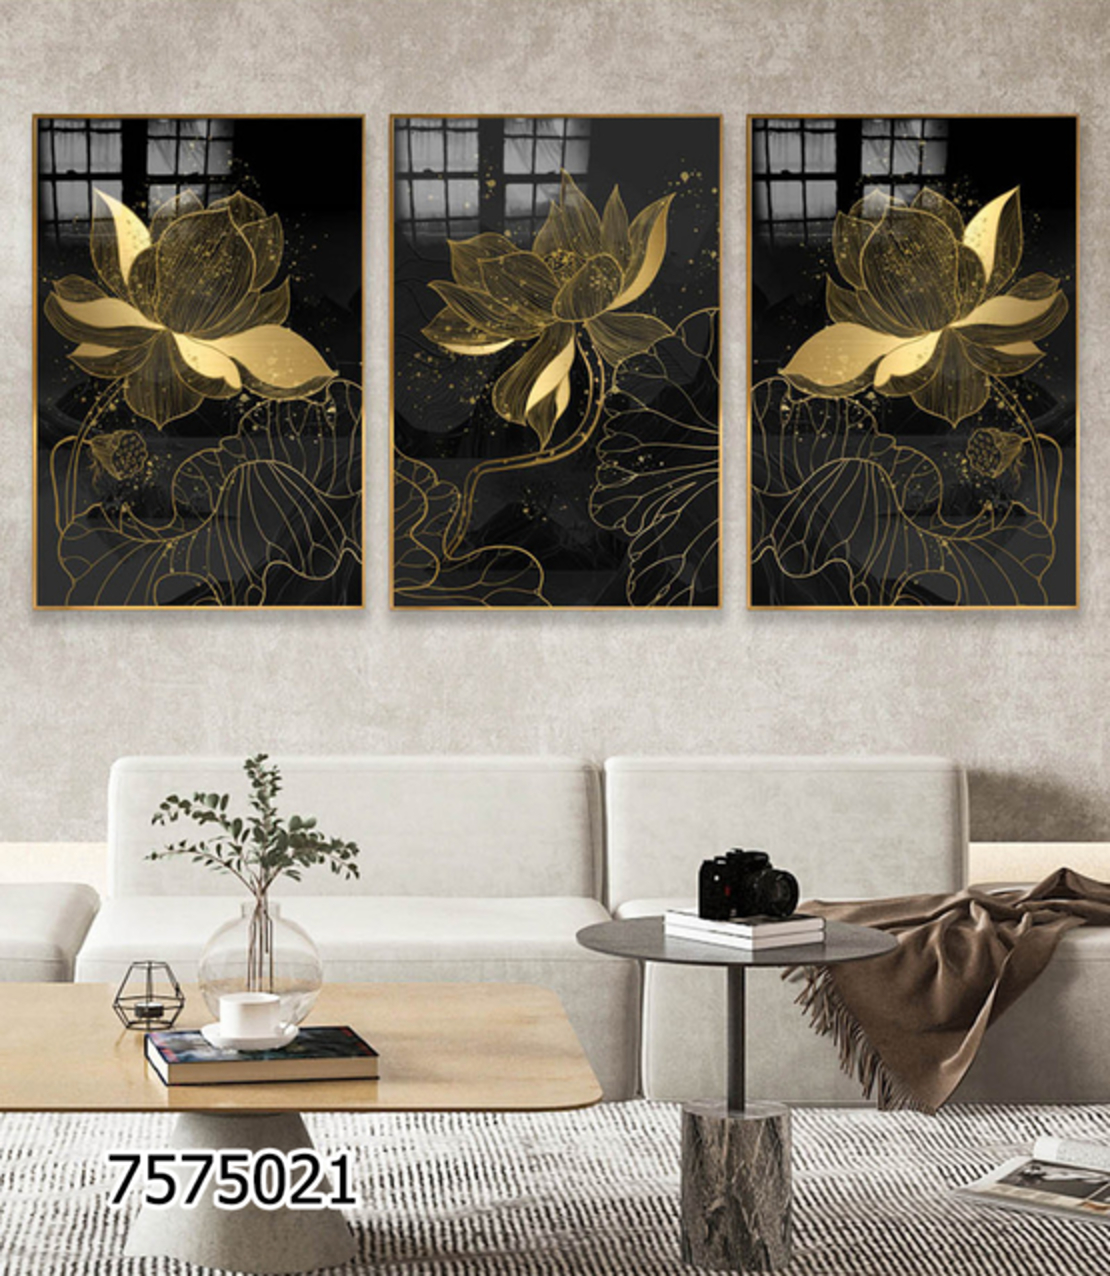 שלשה על קנבס פרחים זהב שחור מתוח וממוסגר לחדר השינה או לסלון דגם 7575021